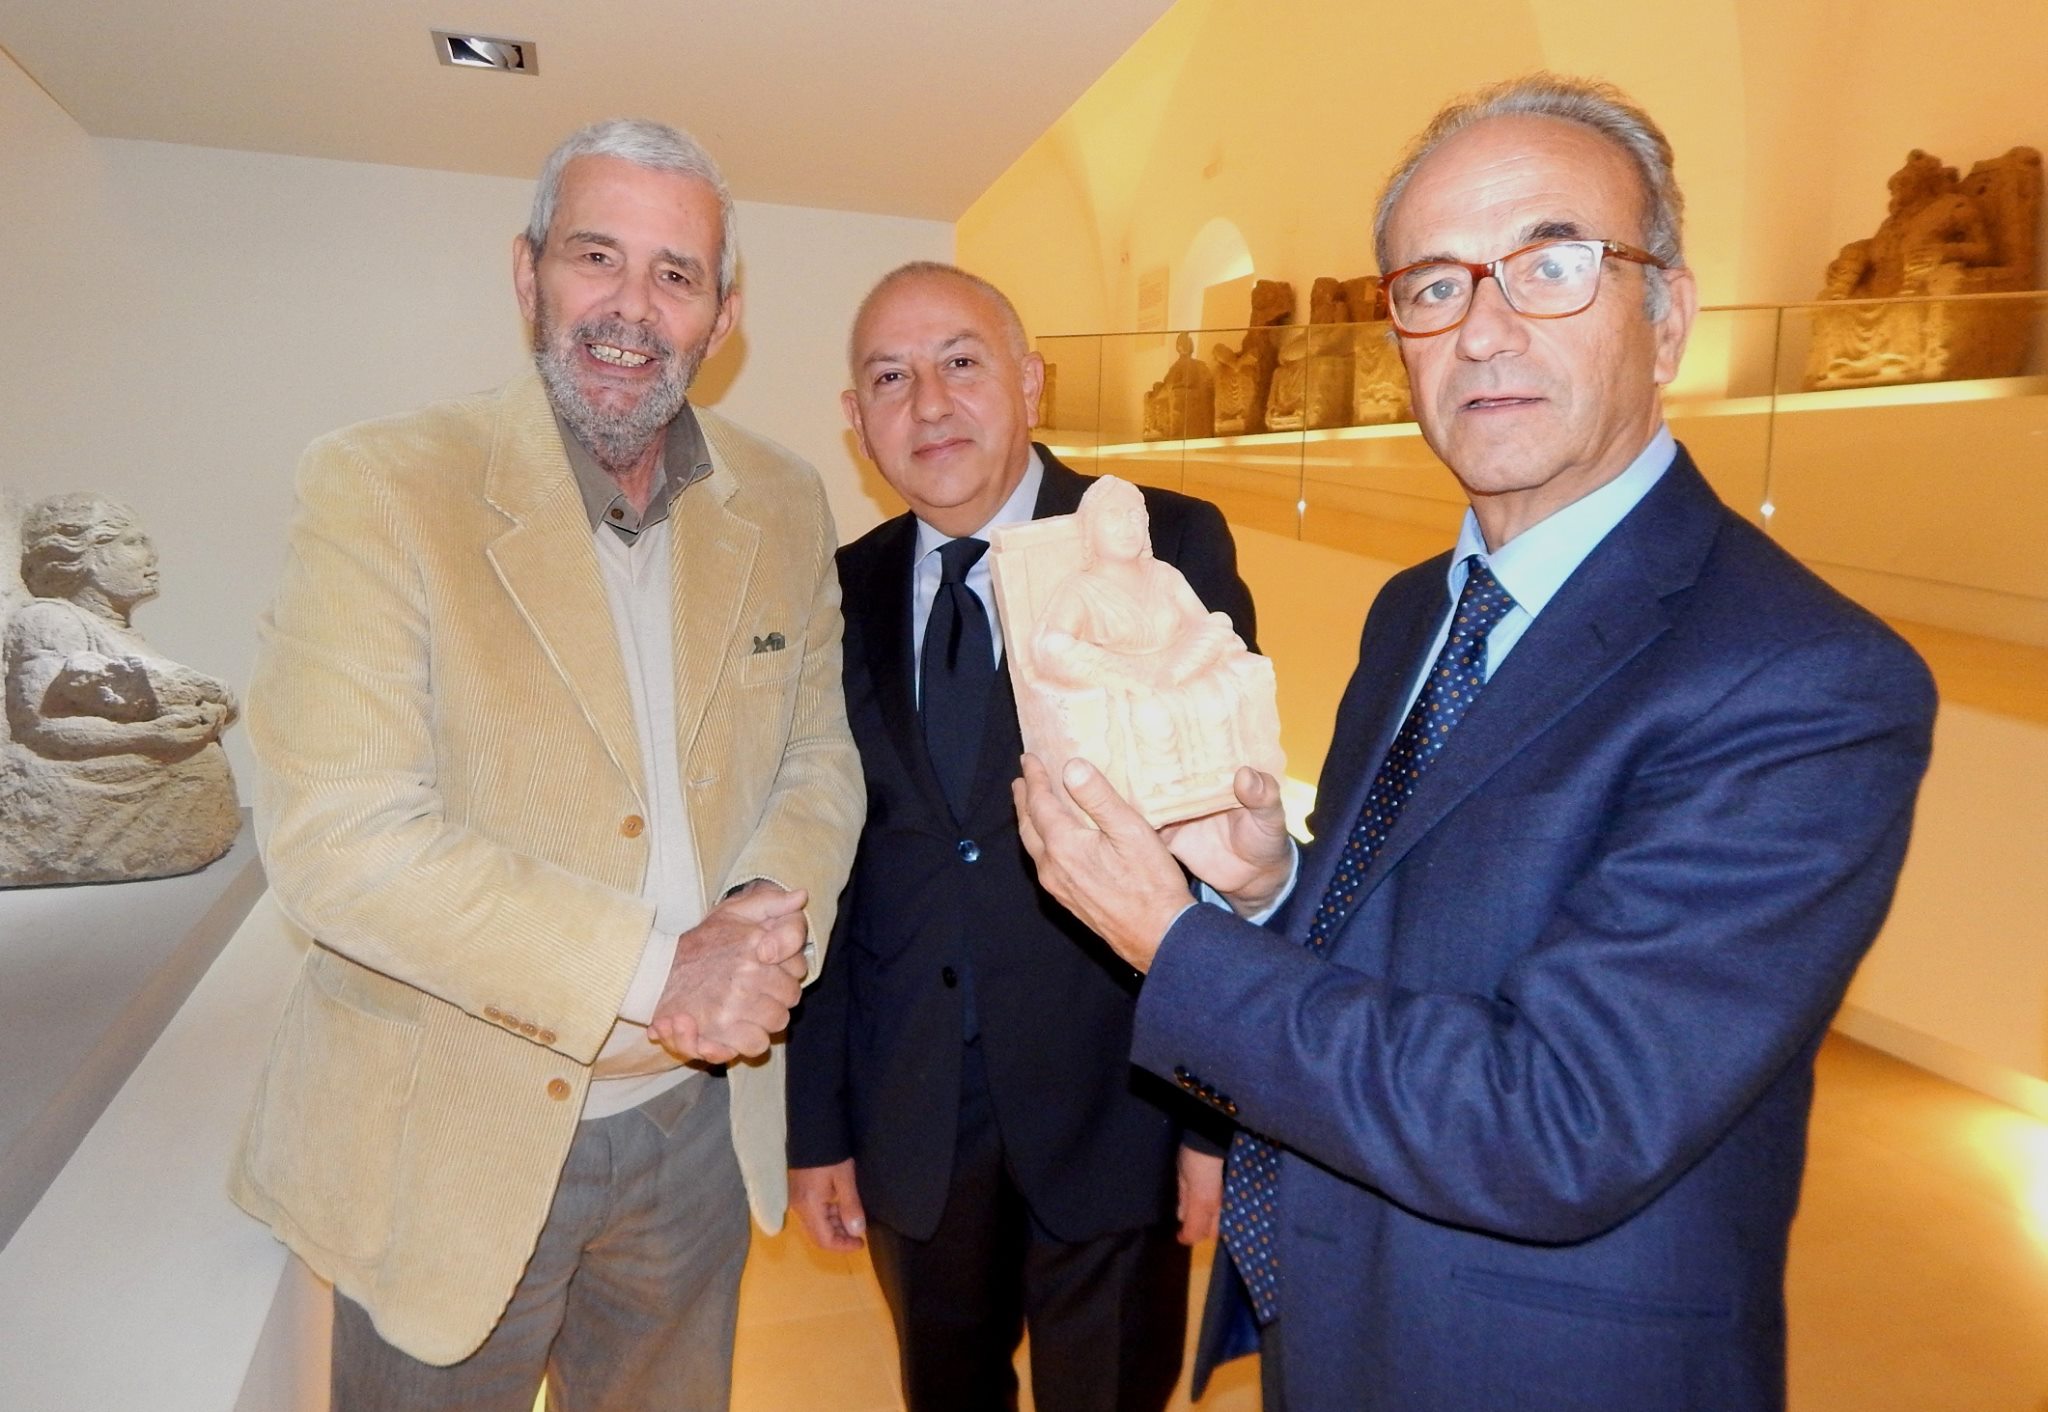 Carlo Borgomeo, Fondazione Con il Sud - a Capua per ricevere il Premio Palasciano e aderire al progetto Adotta una Madre